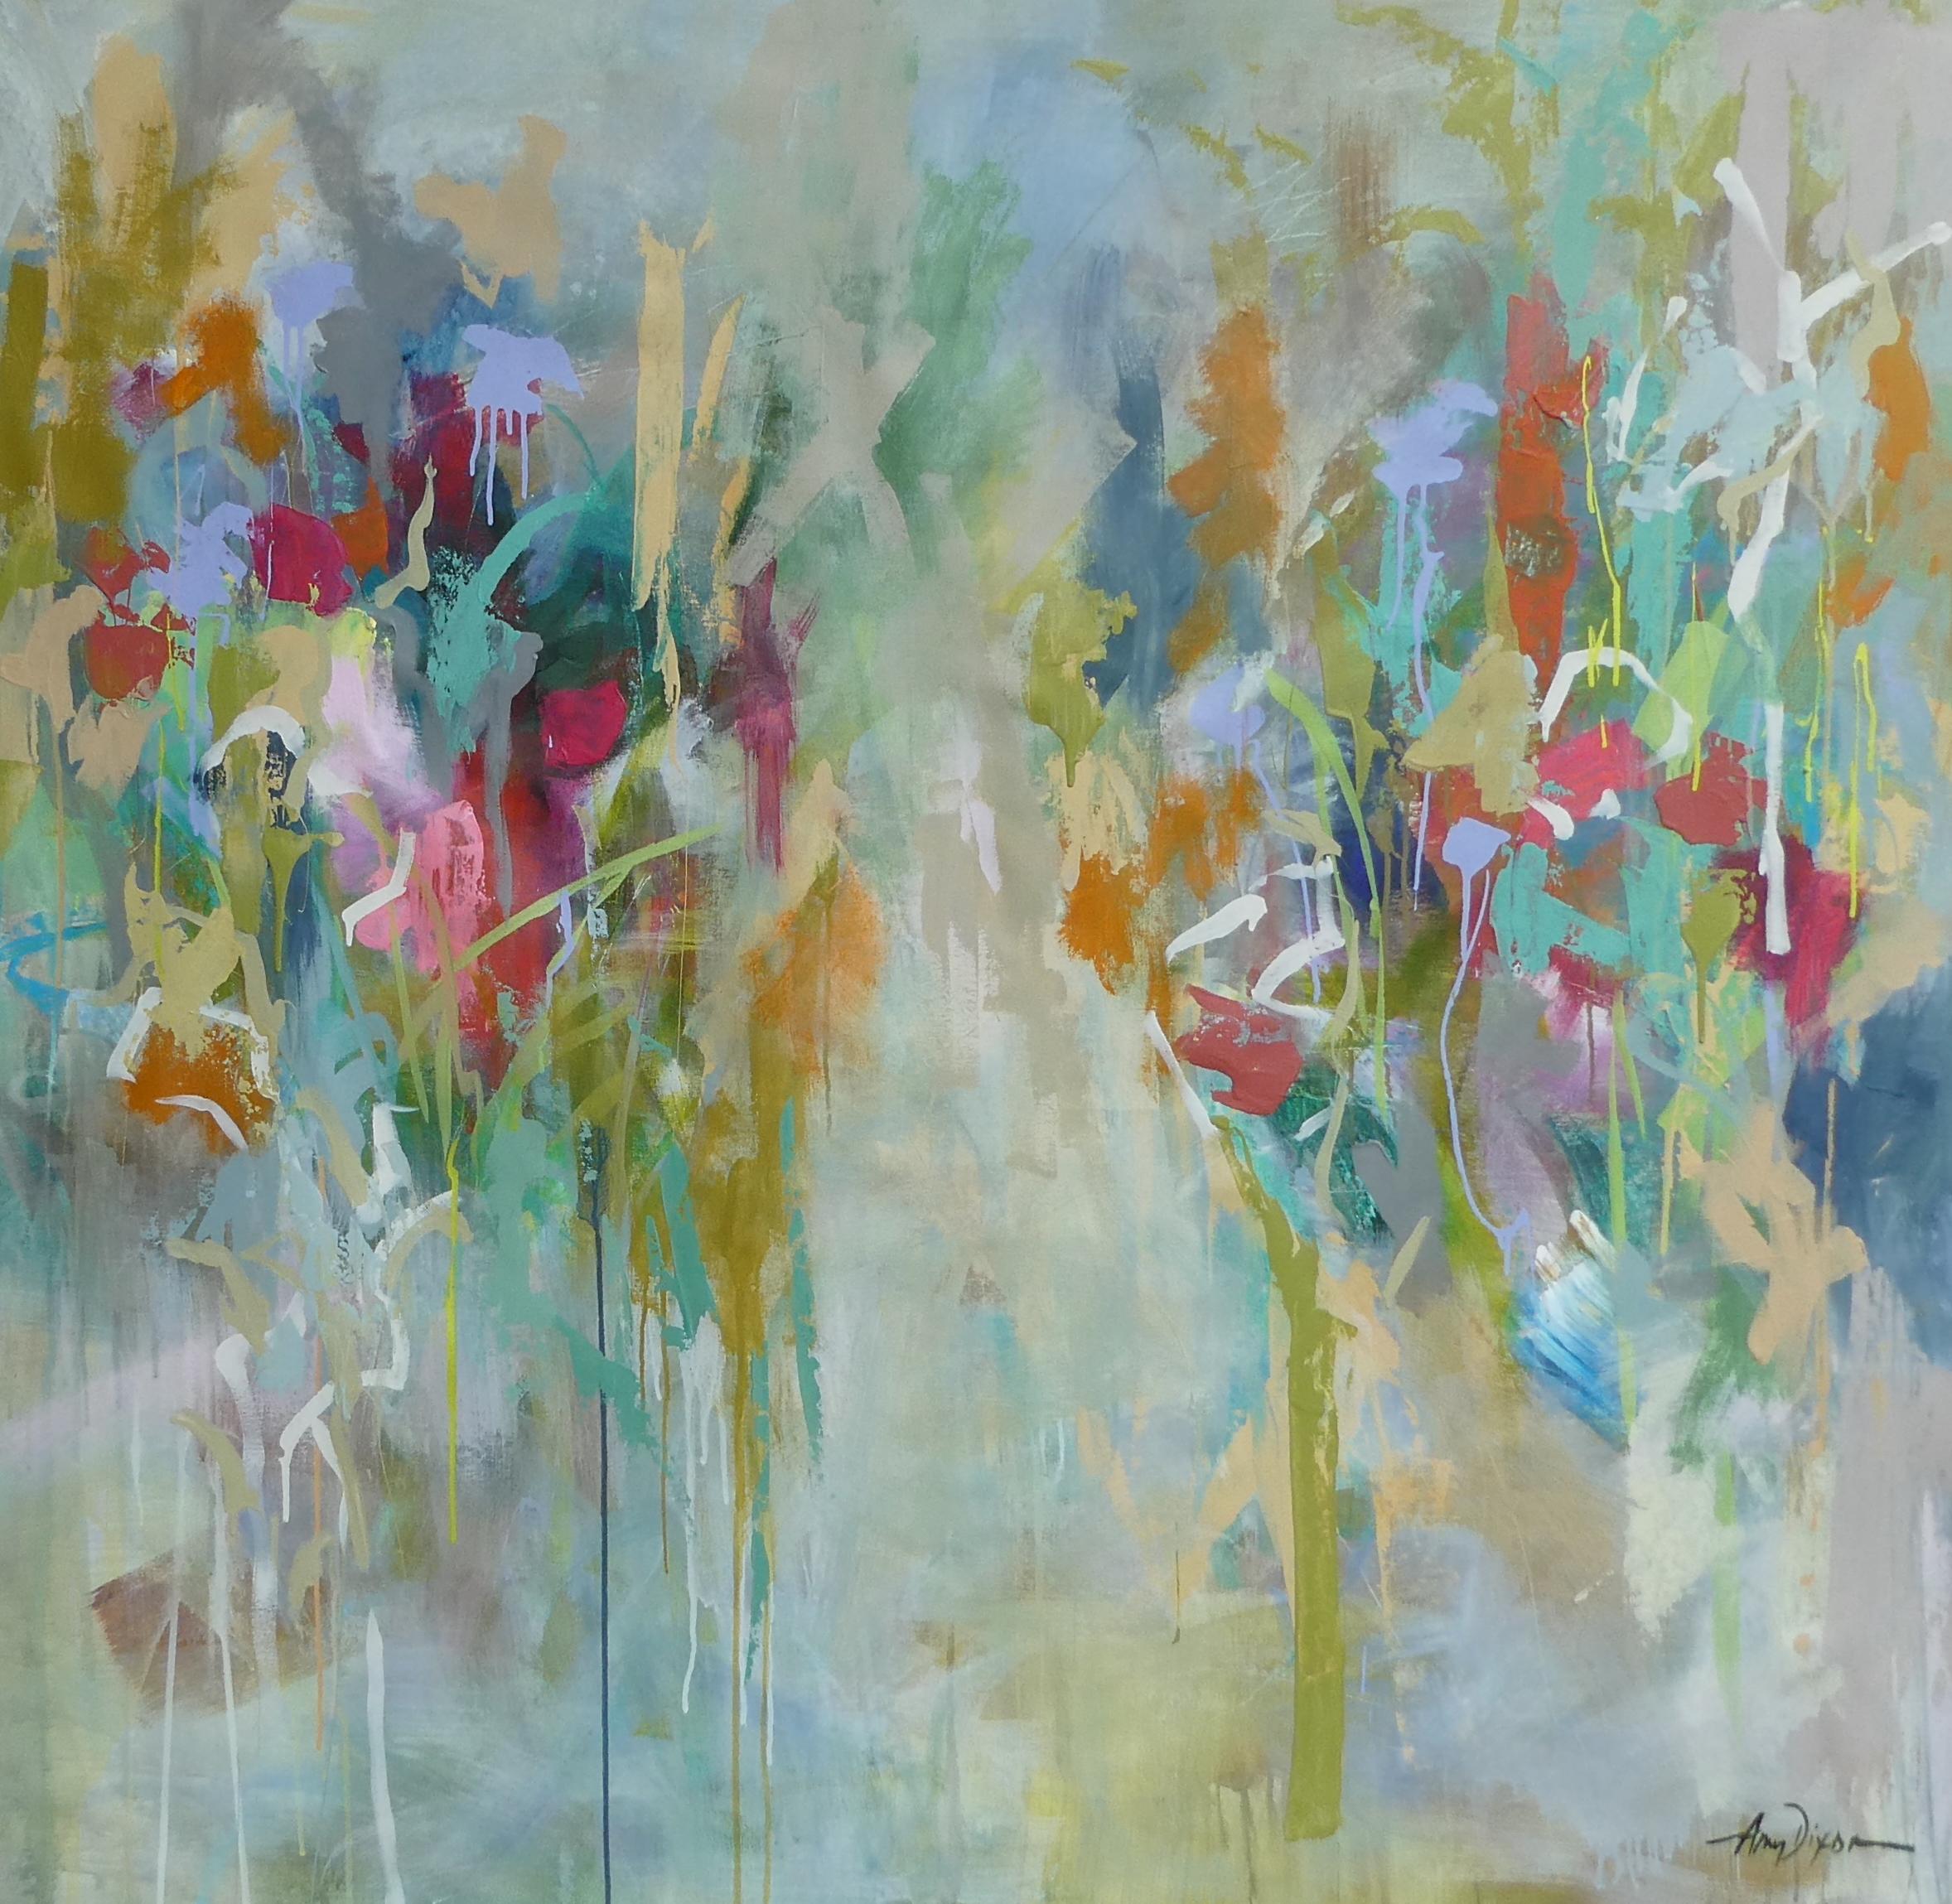 Amy Dixons lockere, spontane Gemälde sind voller Leben, Energie und einer prächtigen Farbpalette, die die Seele erwärmt. Ihre Bilder vermitteln vor allem die ansteckende Lebensfreude der Künstlerin und den reinen und einfachen Ausdruck ihrer